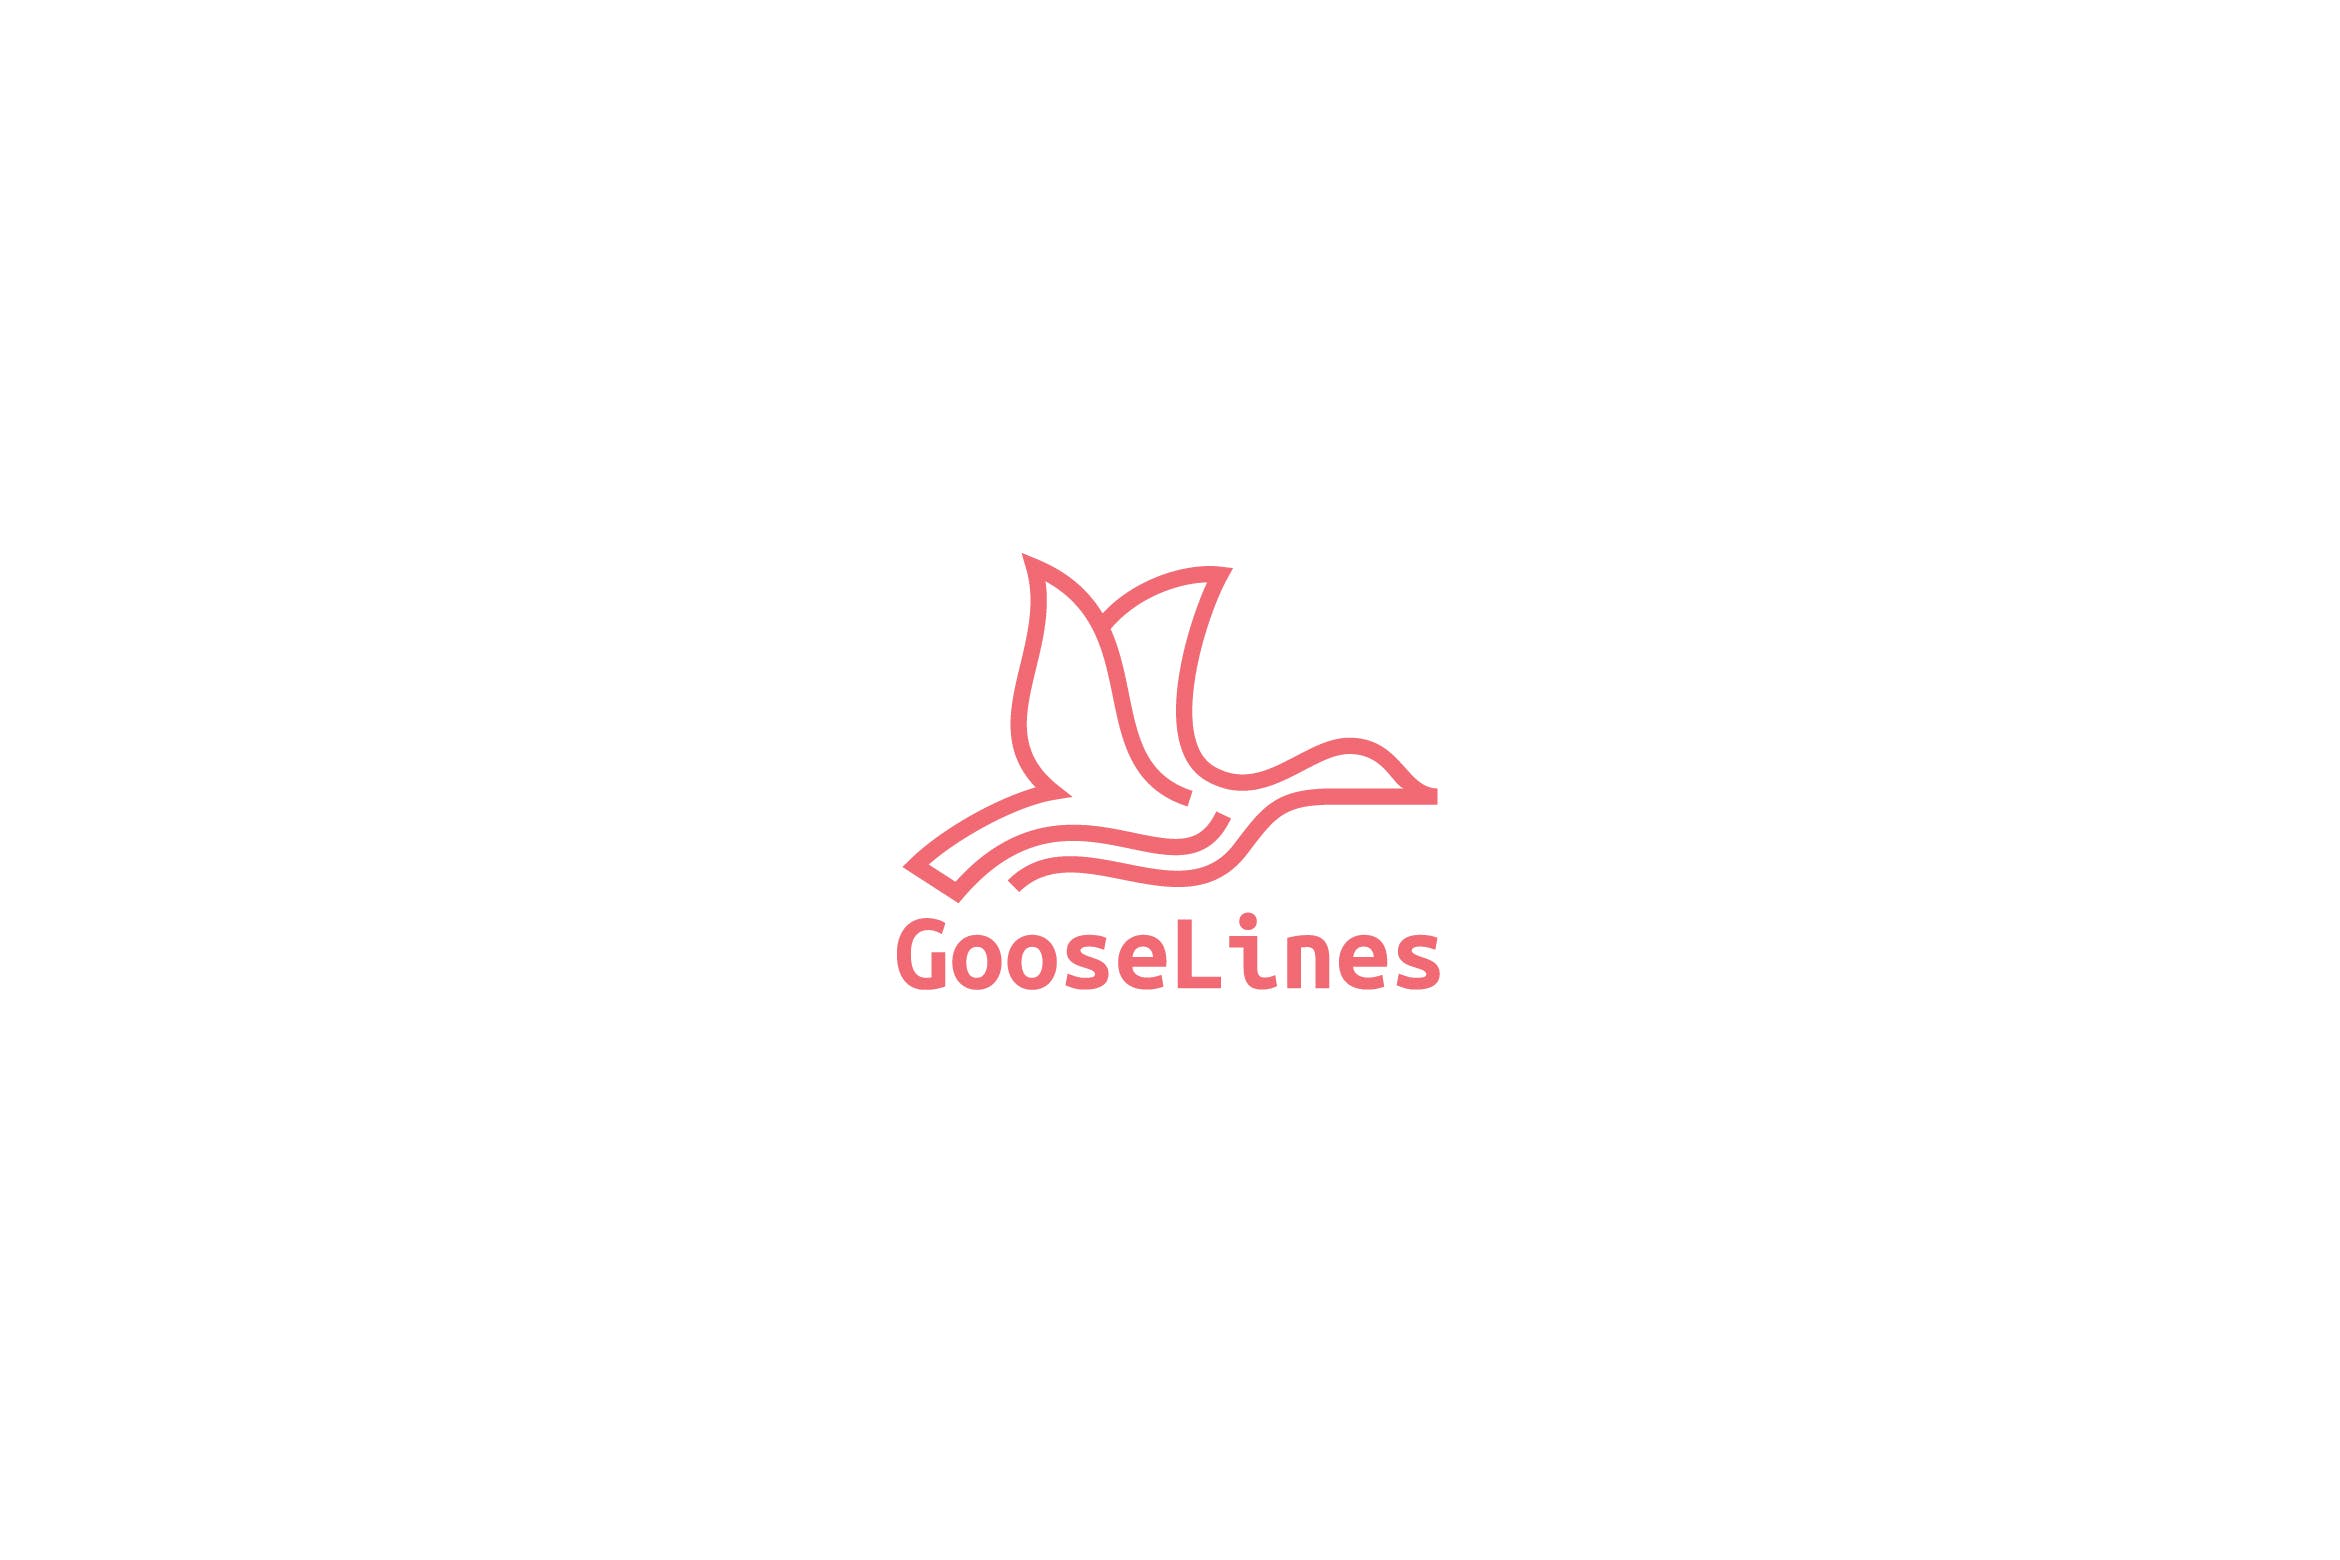 天鹅简笔画线条图形Logo设计16图库精选模板 Goose Lines Logo插图